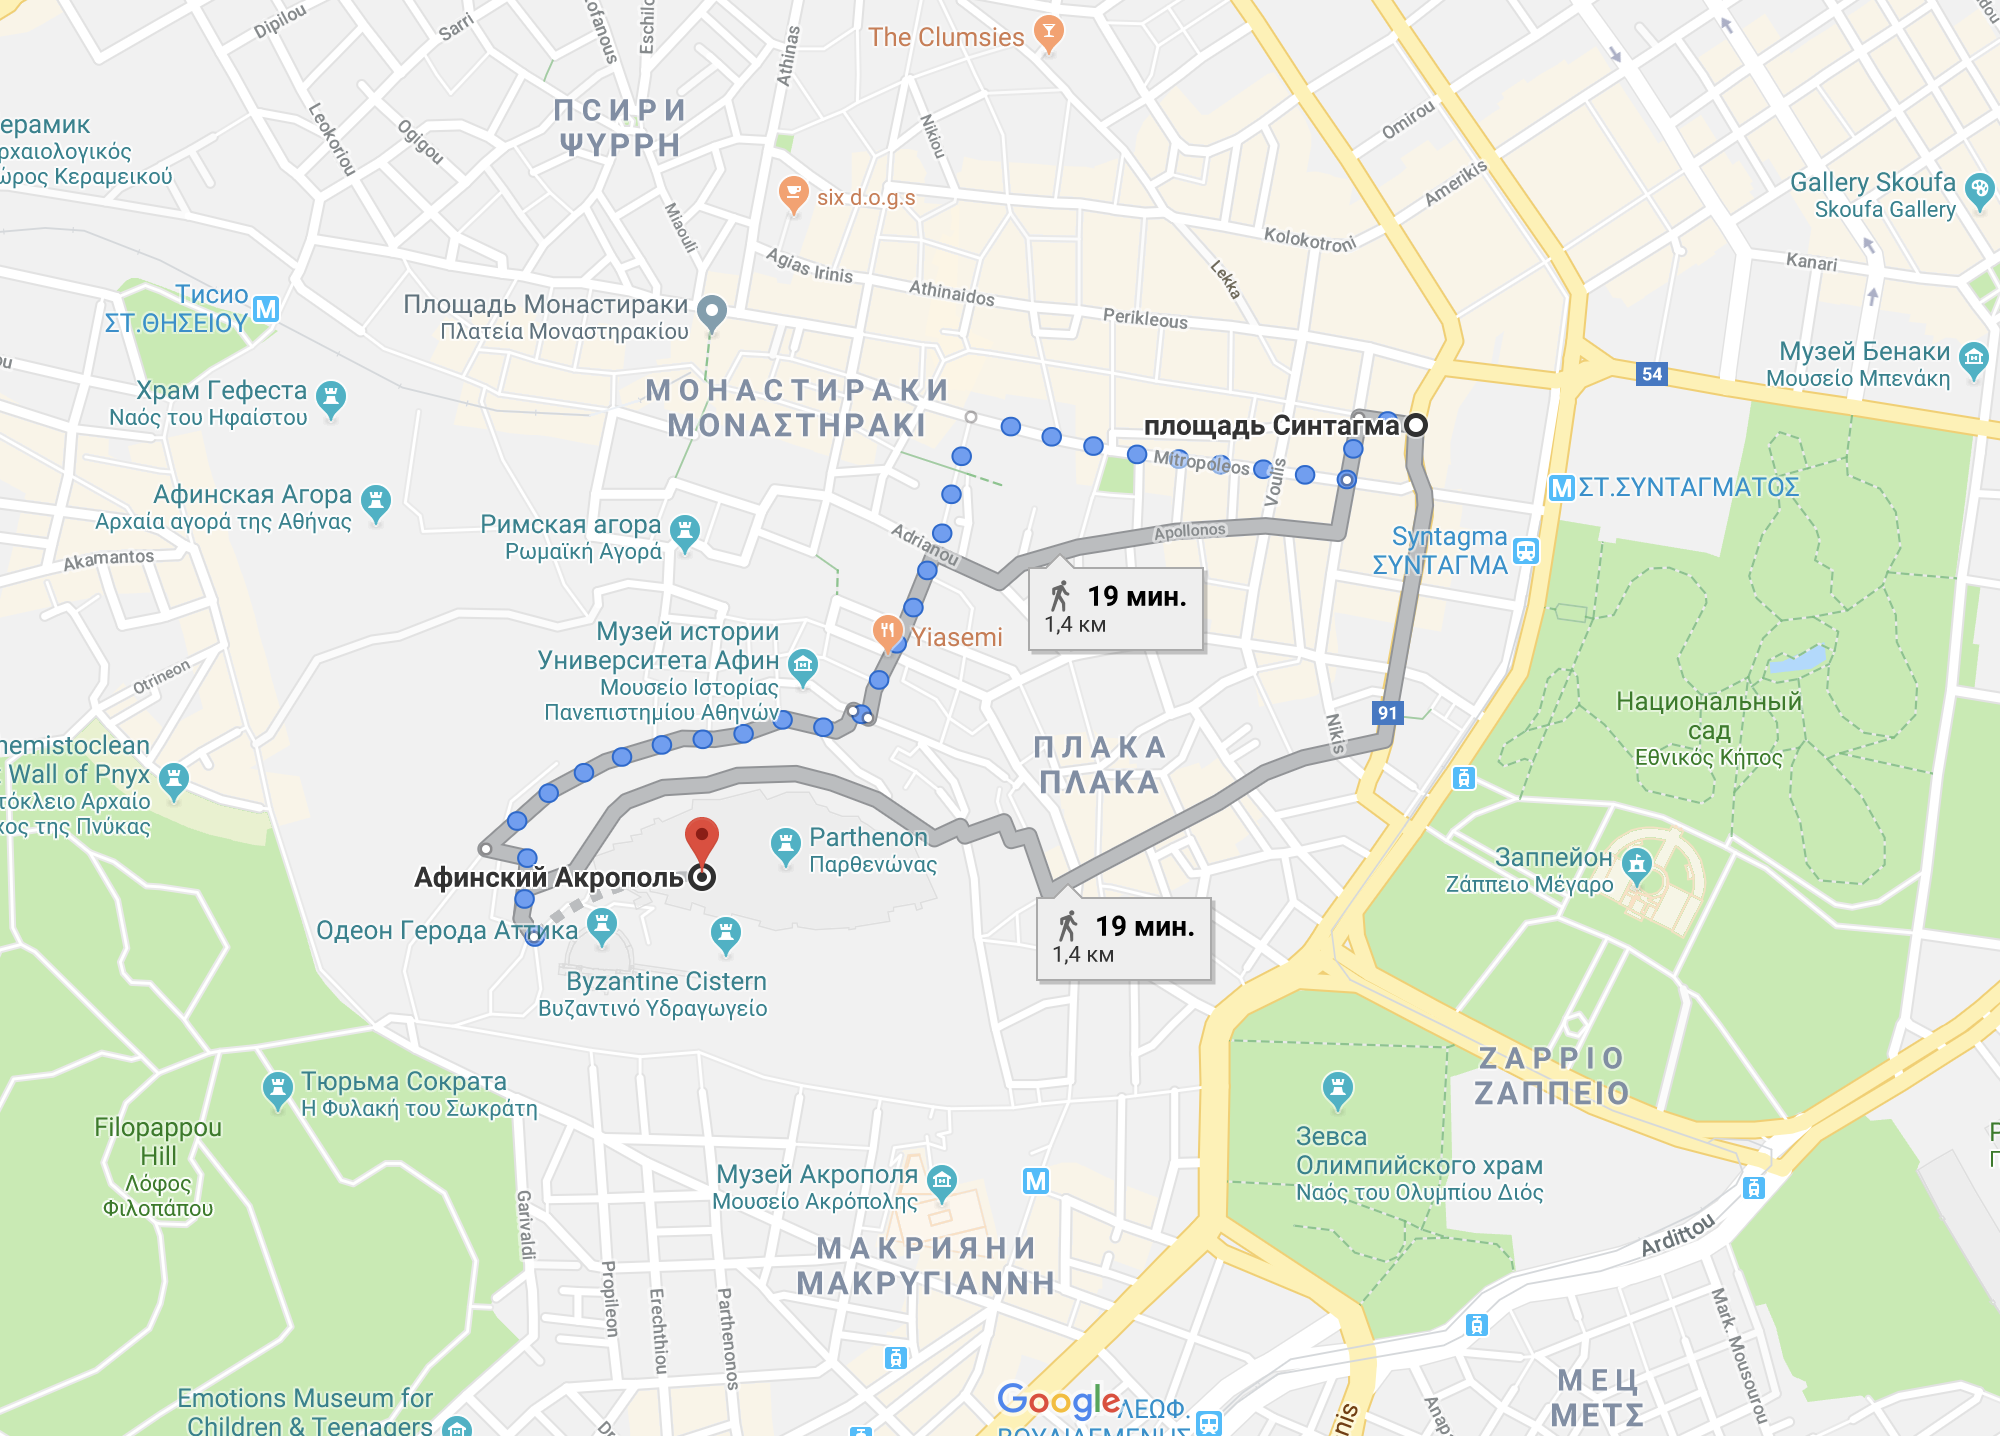 От Синтагмы до Акрополя — 1,5 километра, это 20 минут пешком